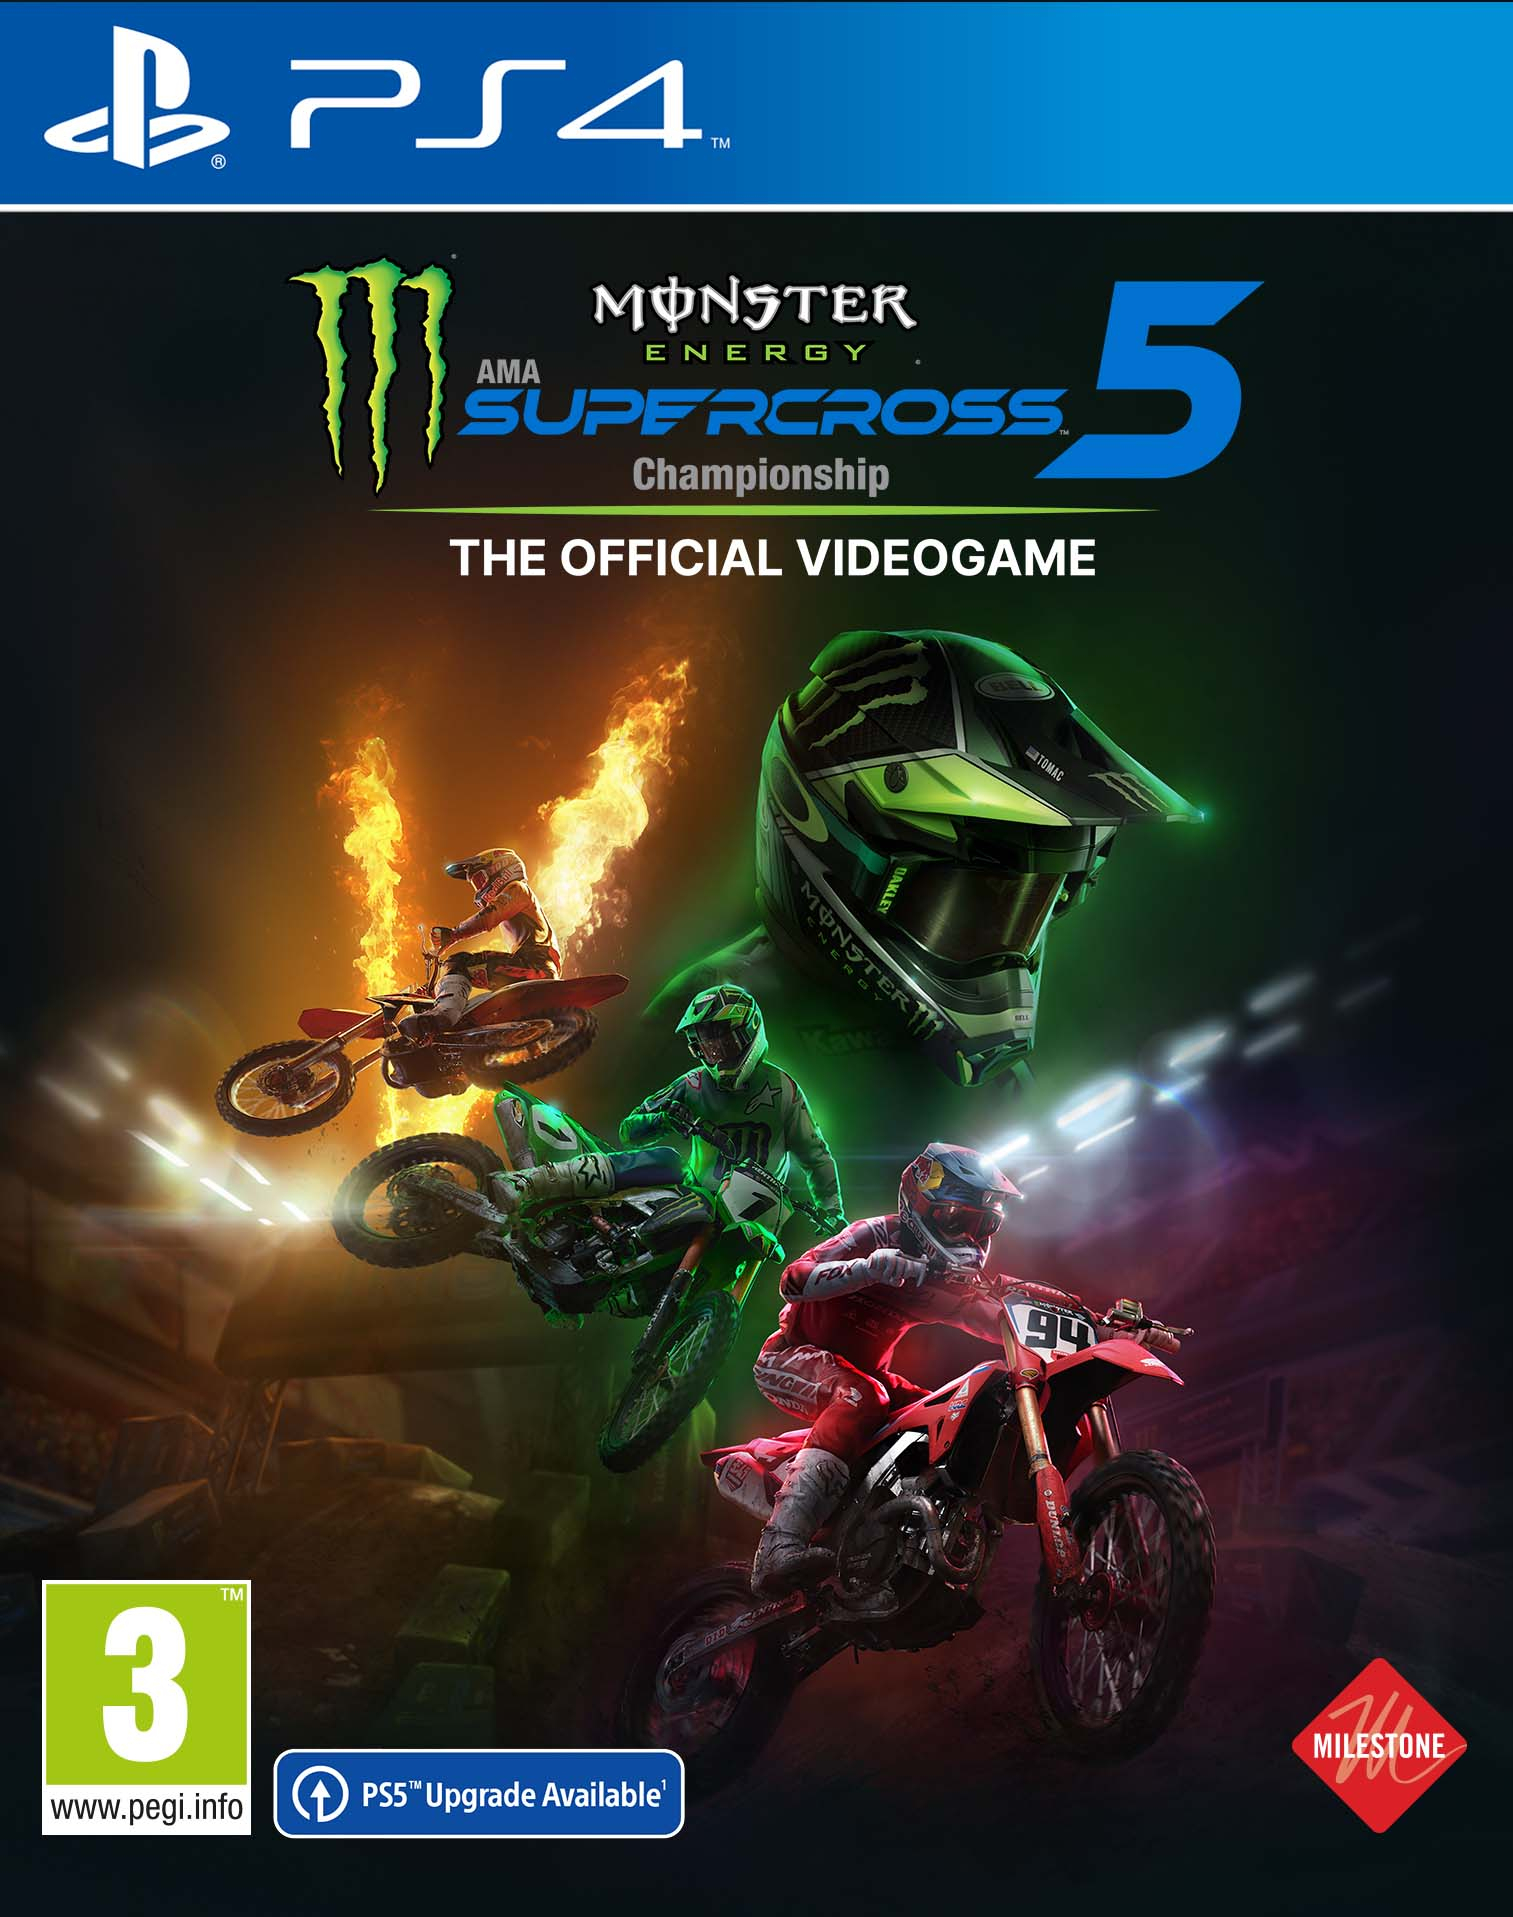 Milestone Monster Energy Supercross 5 PlayStation 4